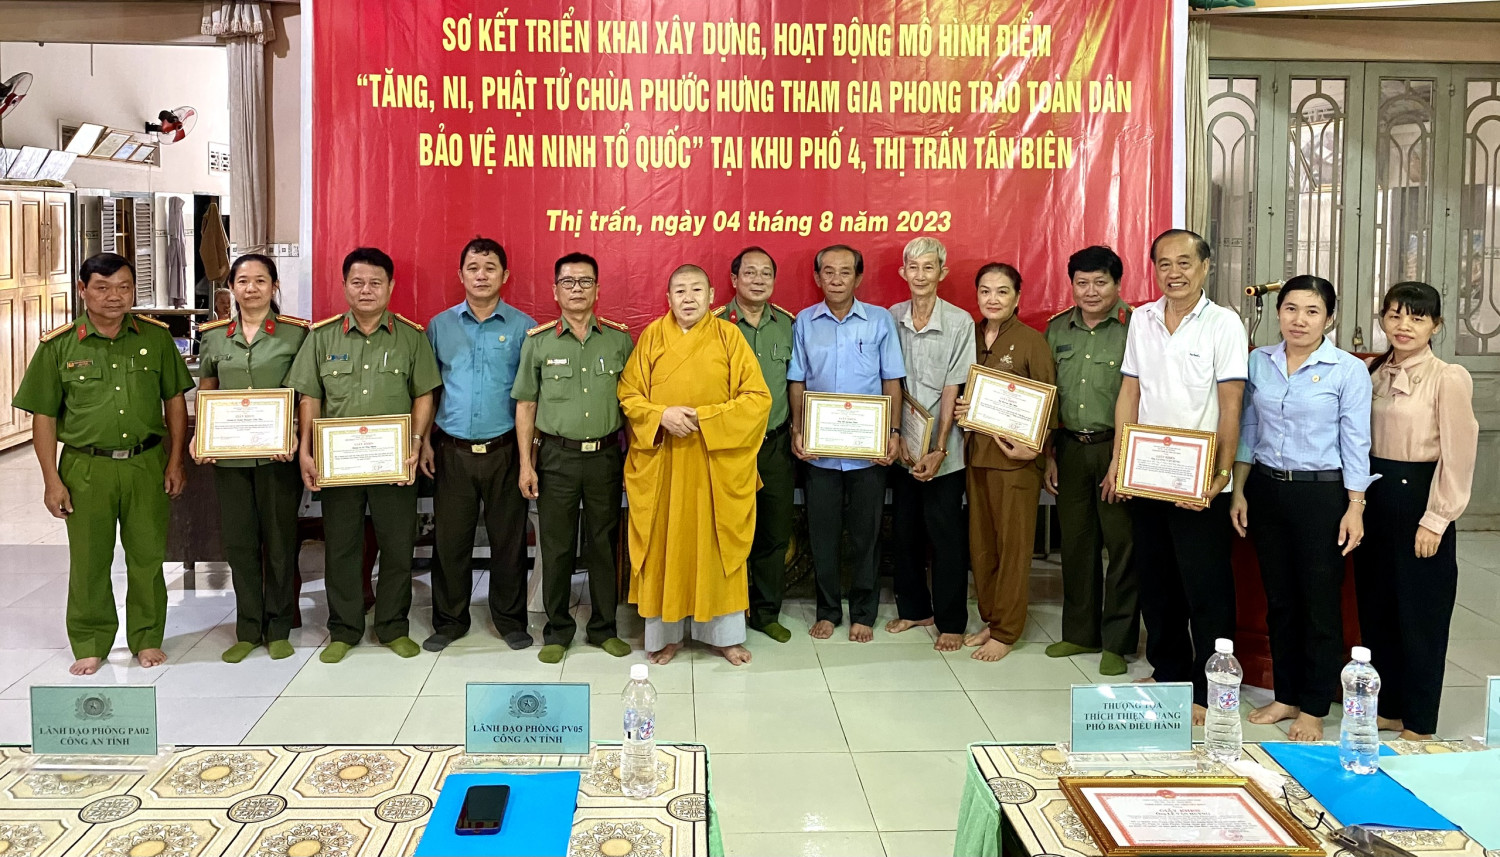 Tân Biên sơ kết triển khai xây dựng, hoạt động mô hình điểm “Tăng, Ni, Phật tử Chùa Phước Hưng tham gia phong trào TDBVANTQ” trên địa bàn thị trấn.